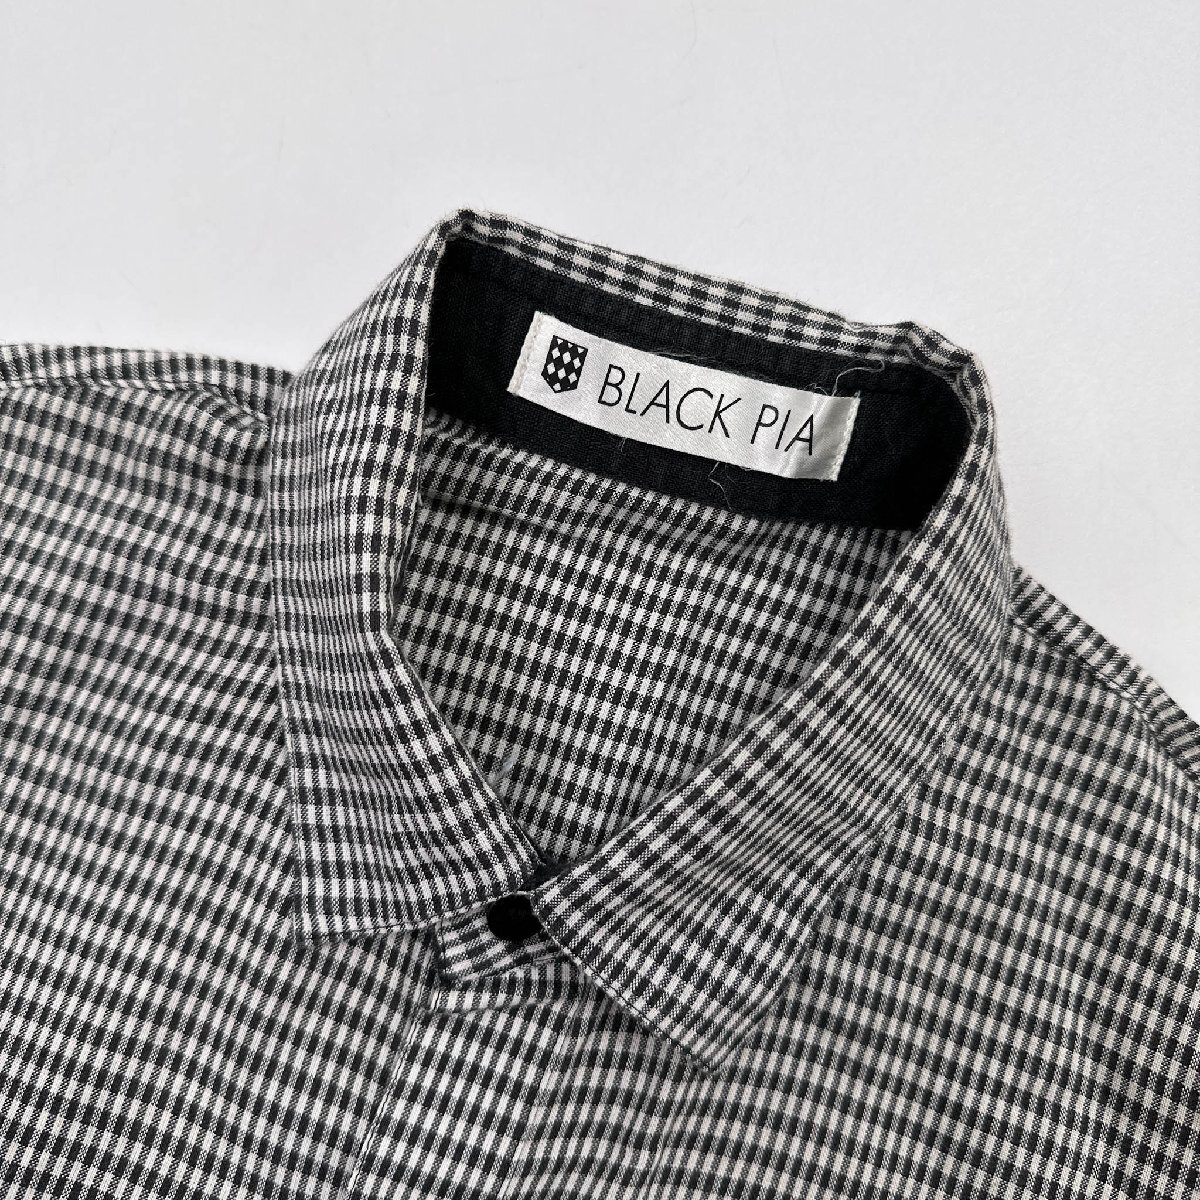 linen.*BLACKPIA черный Piaa в клетку рубашка с коротким рукавом ( M ) / мужской джентльмен Leica сделано в Японии лен 